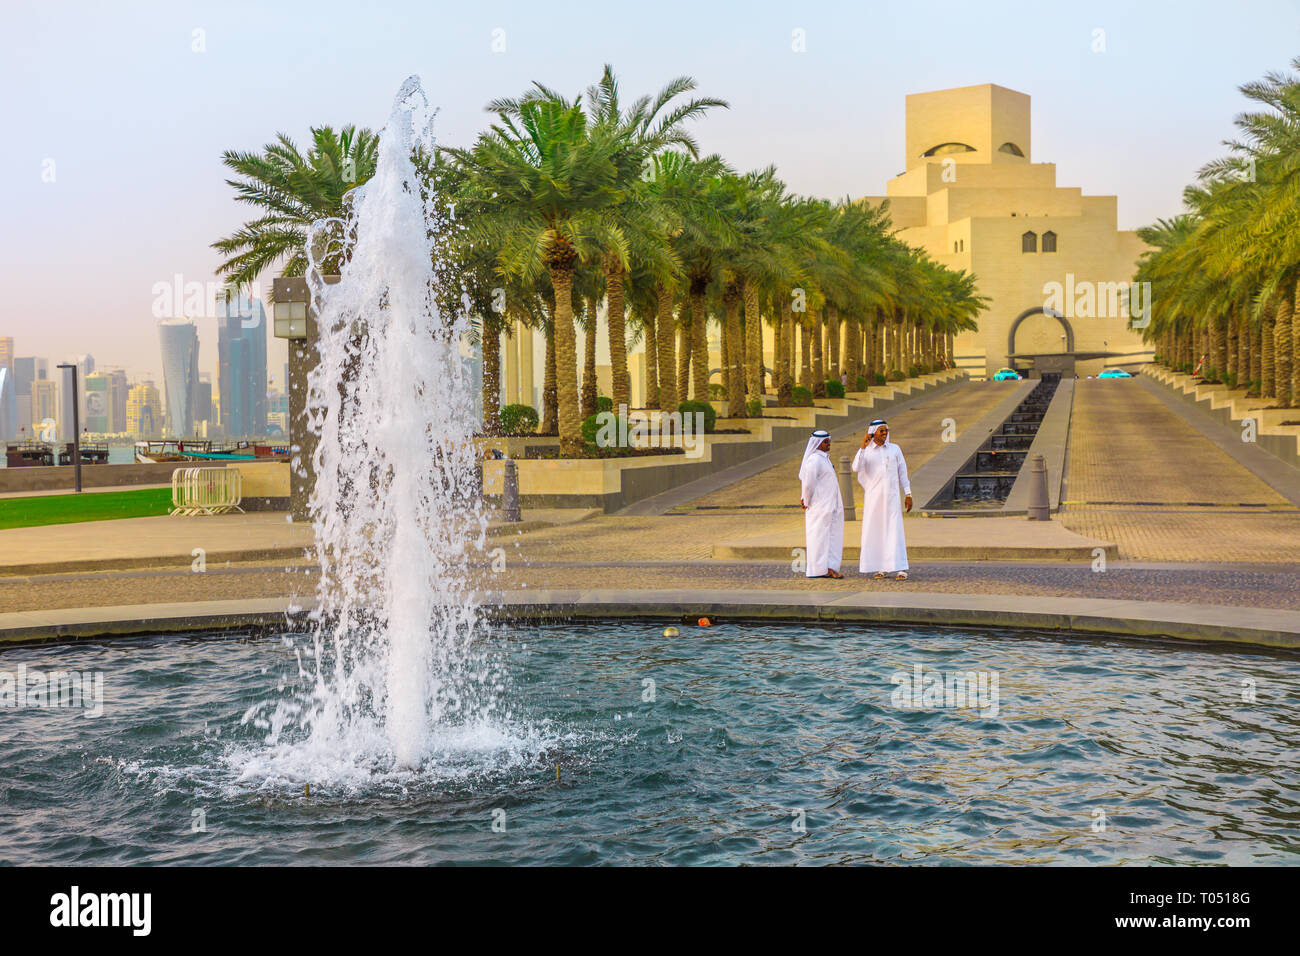 Doha, Qatar - 16 de febrero de 2019: dos árabes de pie cerca de la fuente del Museo de Arte Islámico con rascacielos de West Bay skyline en segundo plano. Oriente Foto de stock